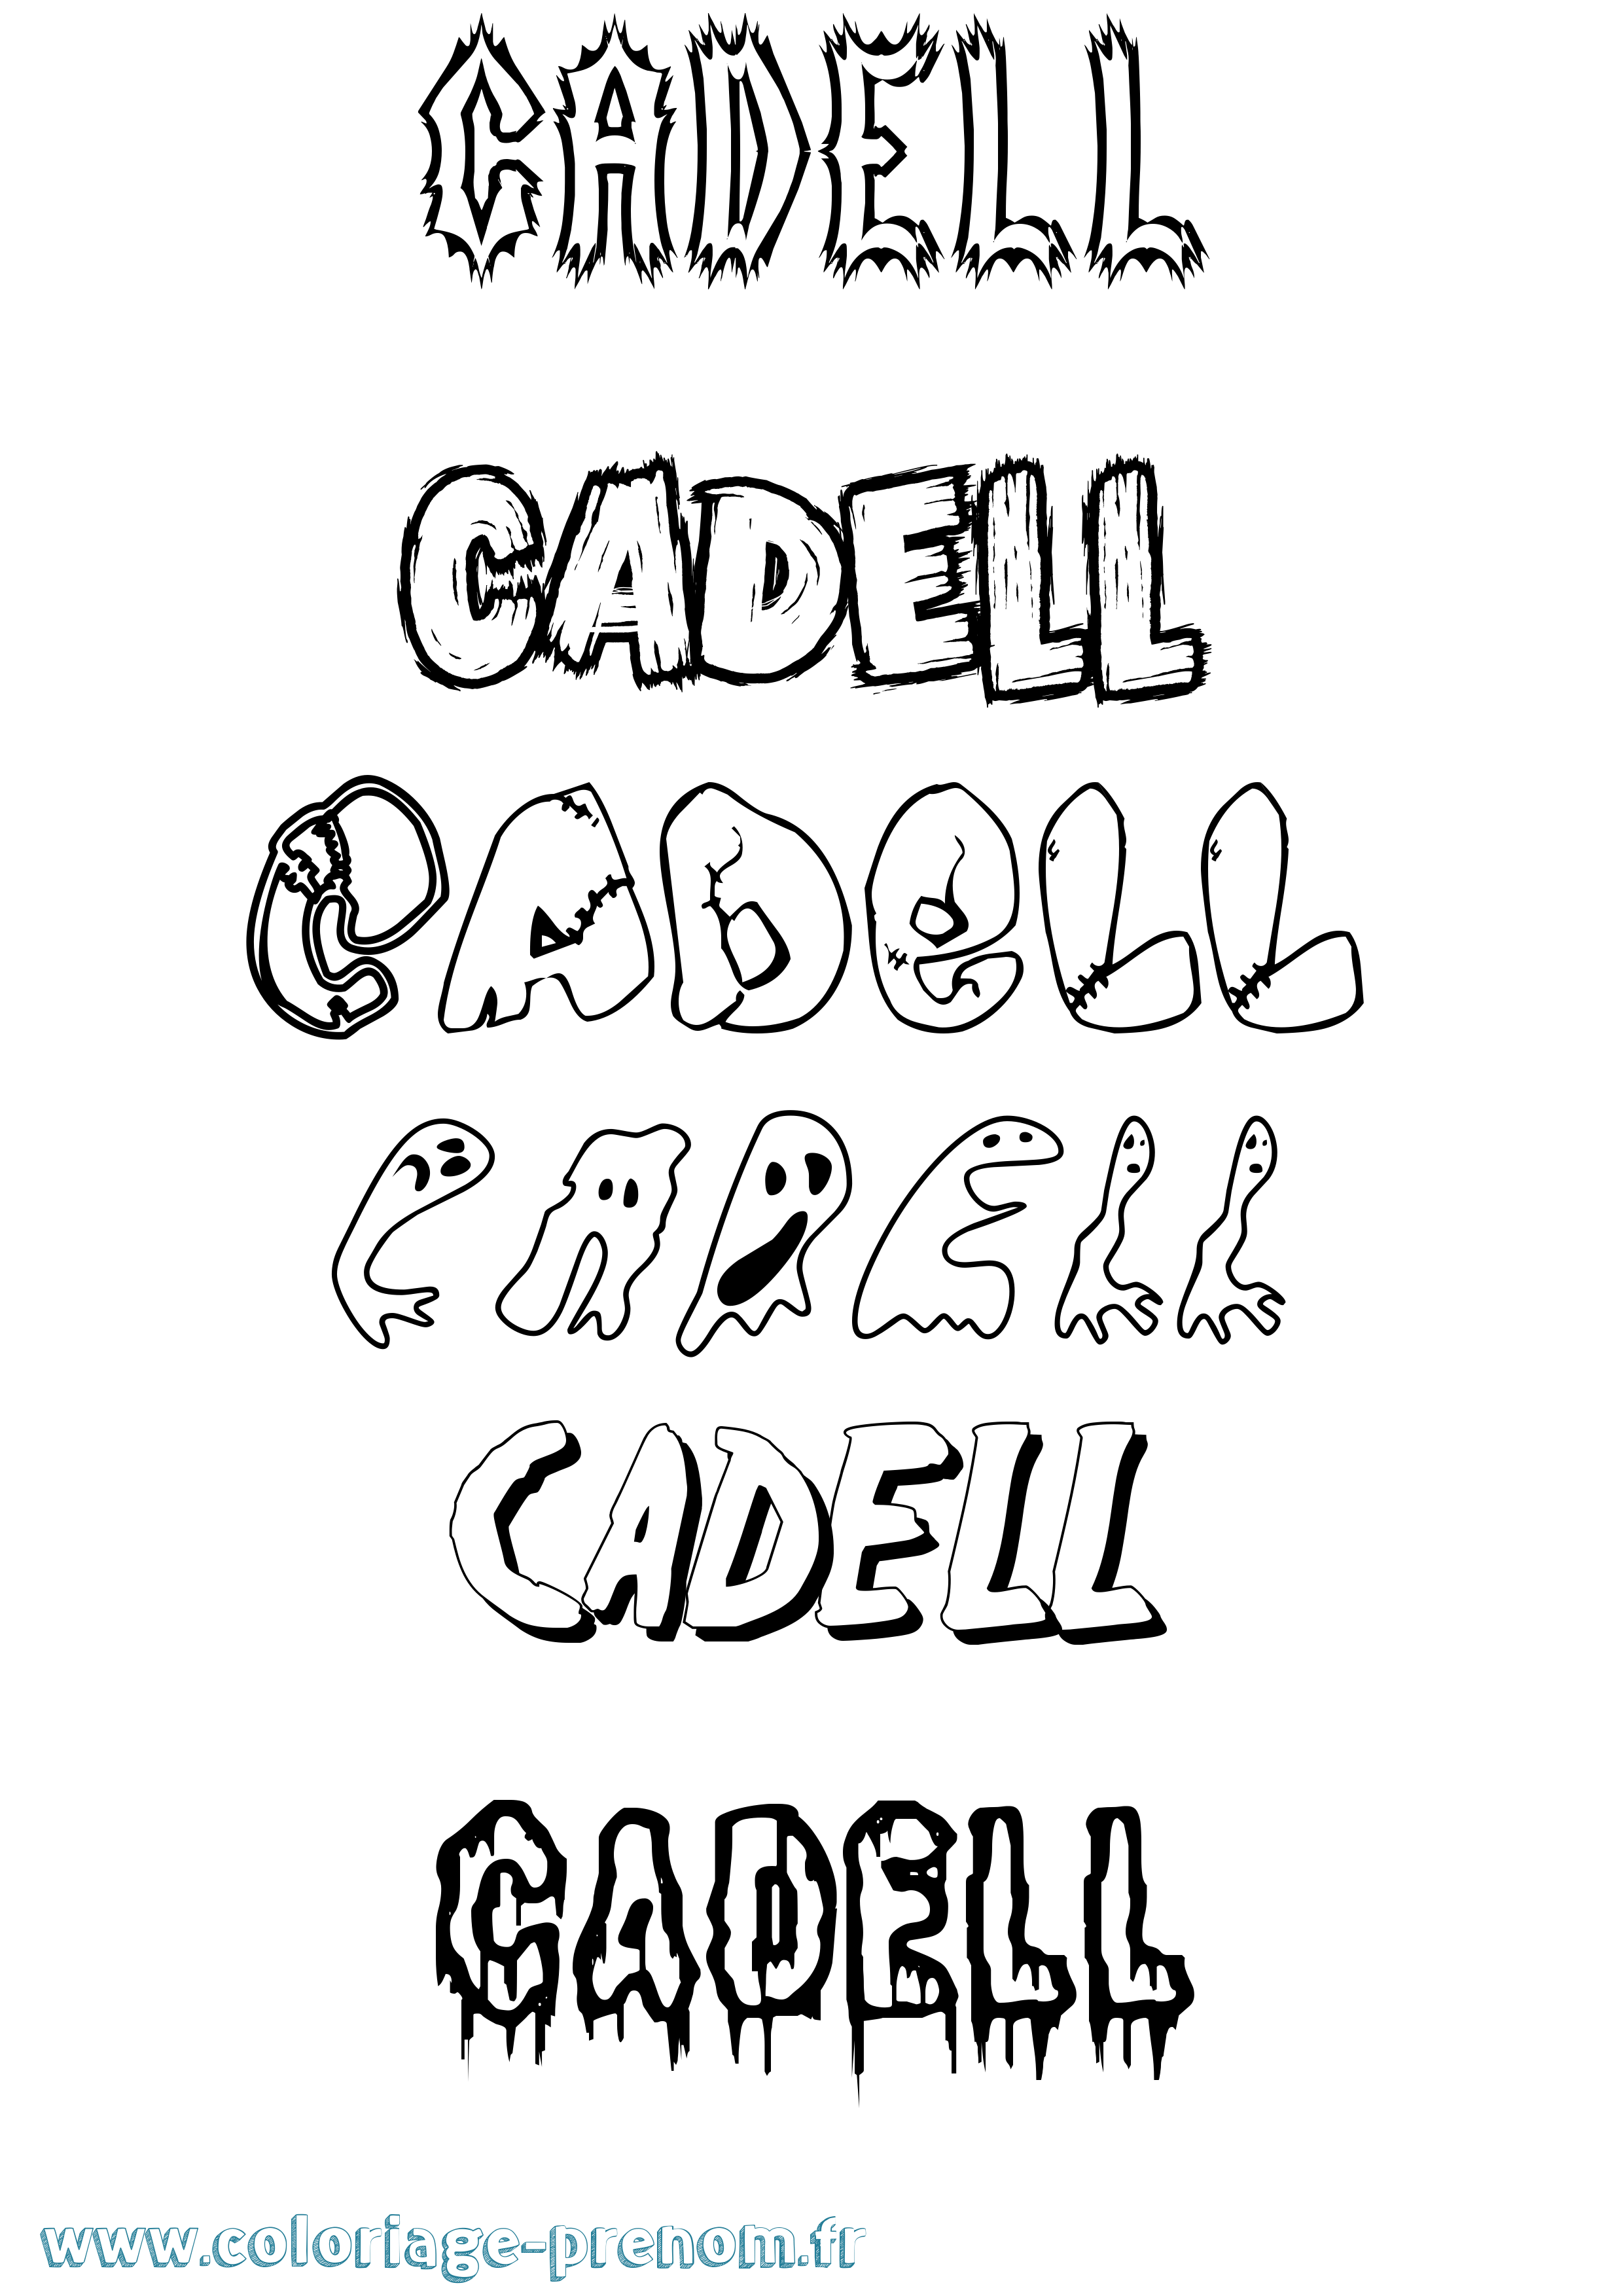 Coloriage prénom Cadell Frisson